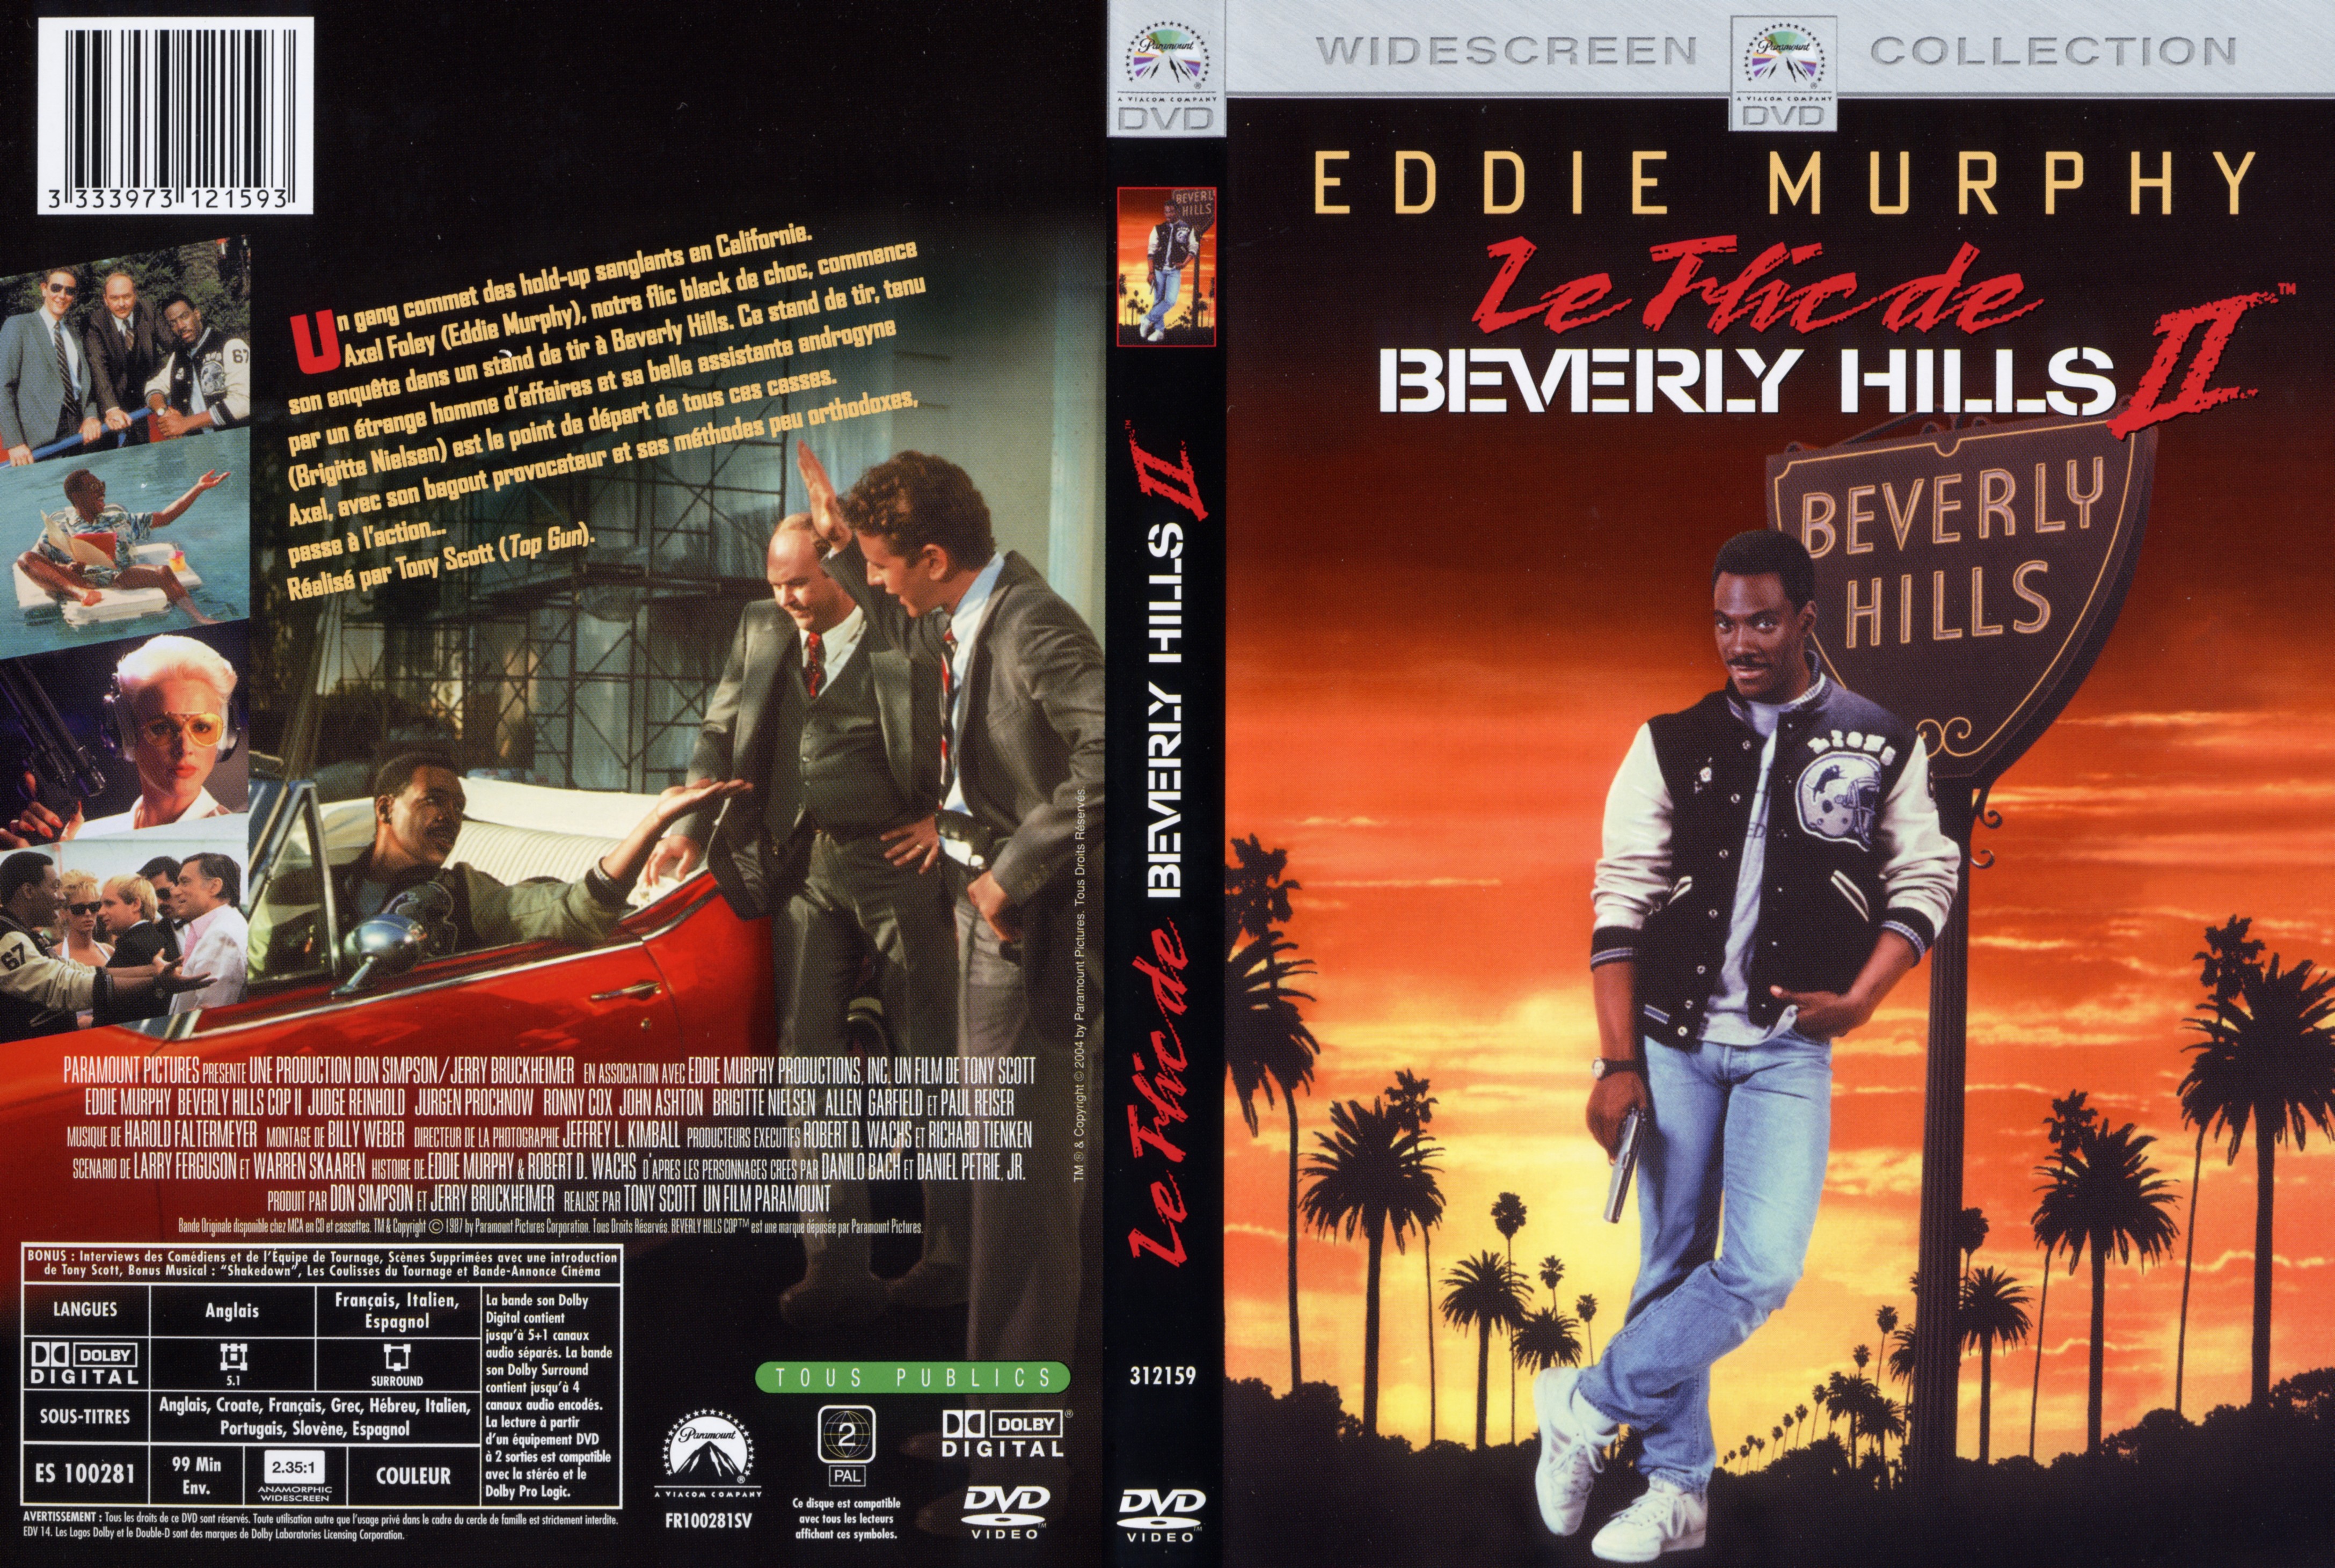 Jaquette DVD Le flic de Beverly hills 2